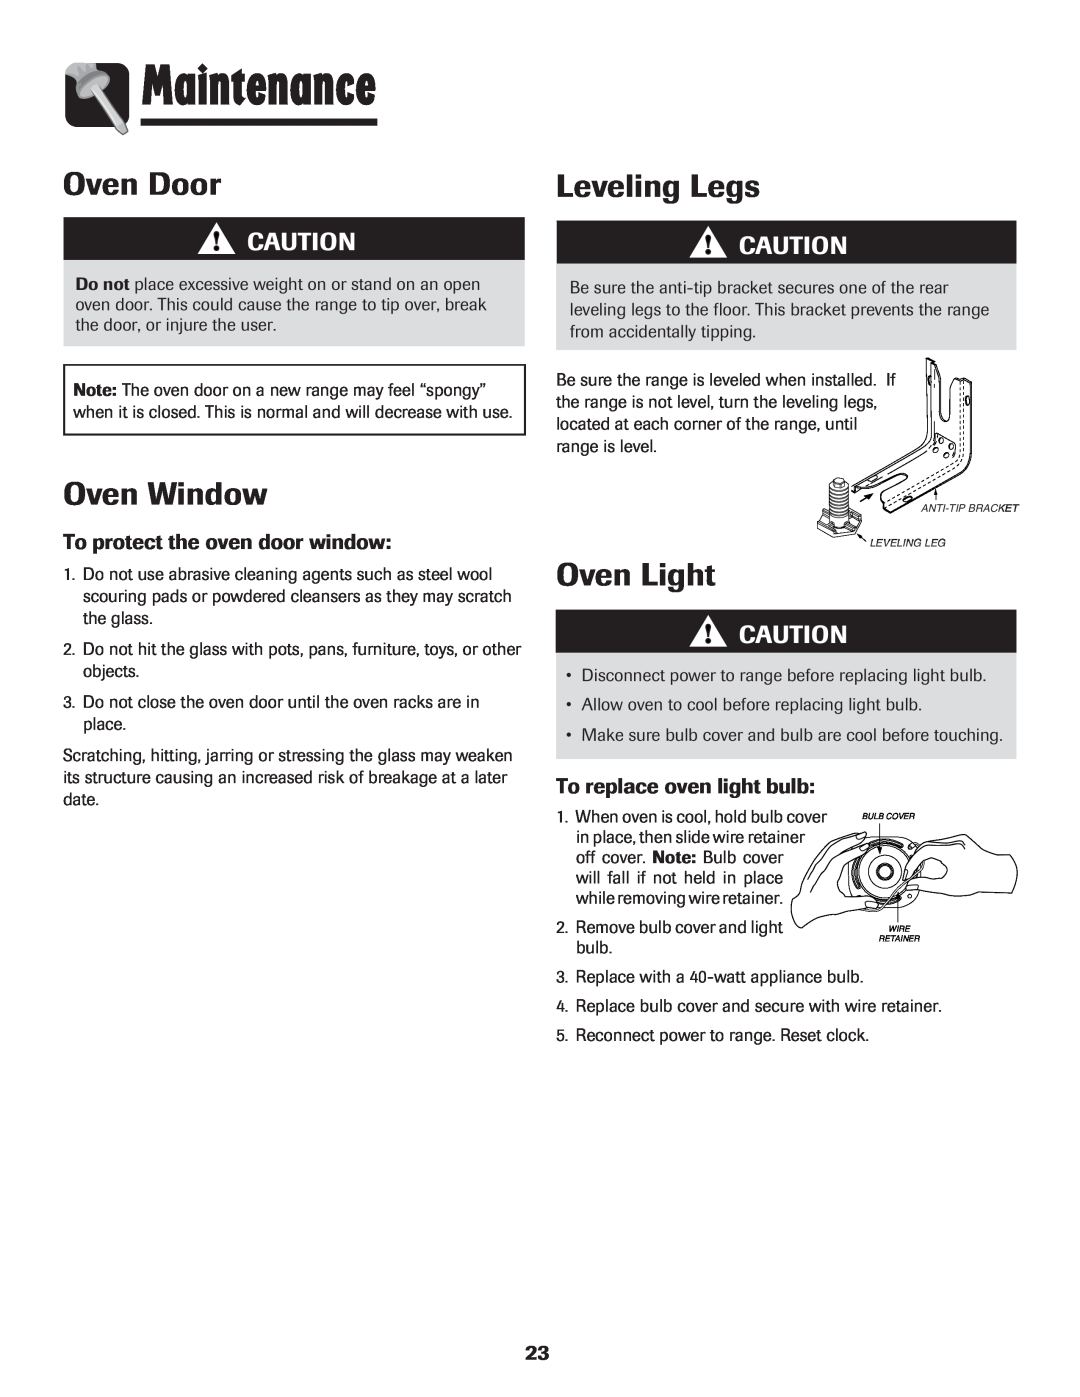 Maytag MER5875RAF Maintenance, Oven Door, Oven Window, Leveling Legs, To protect the oven door window, Oven Light, bulb 